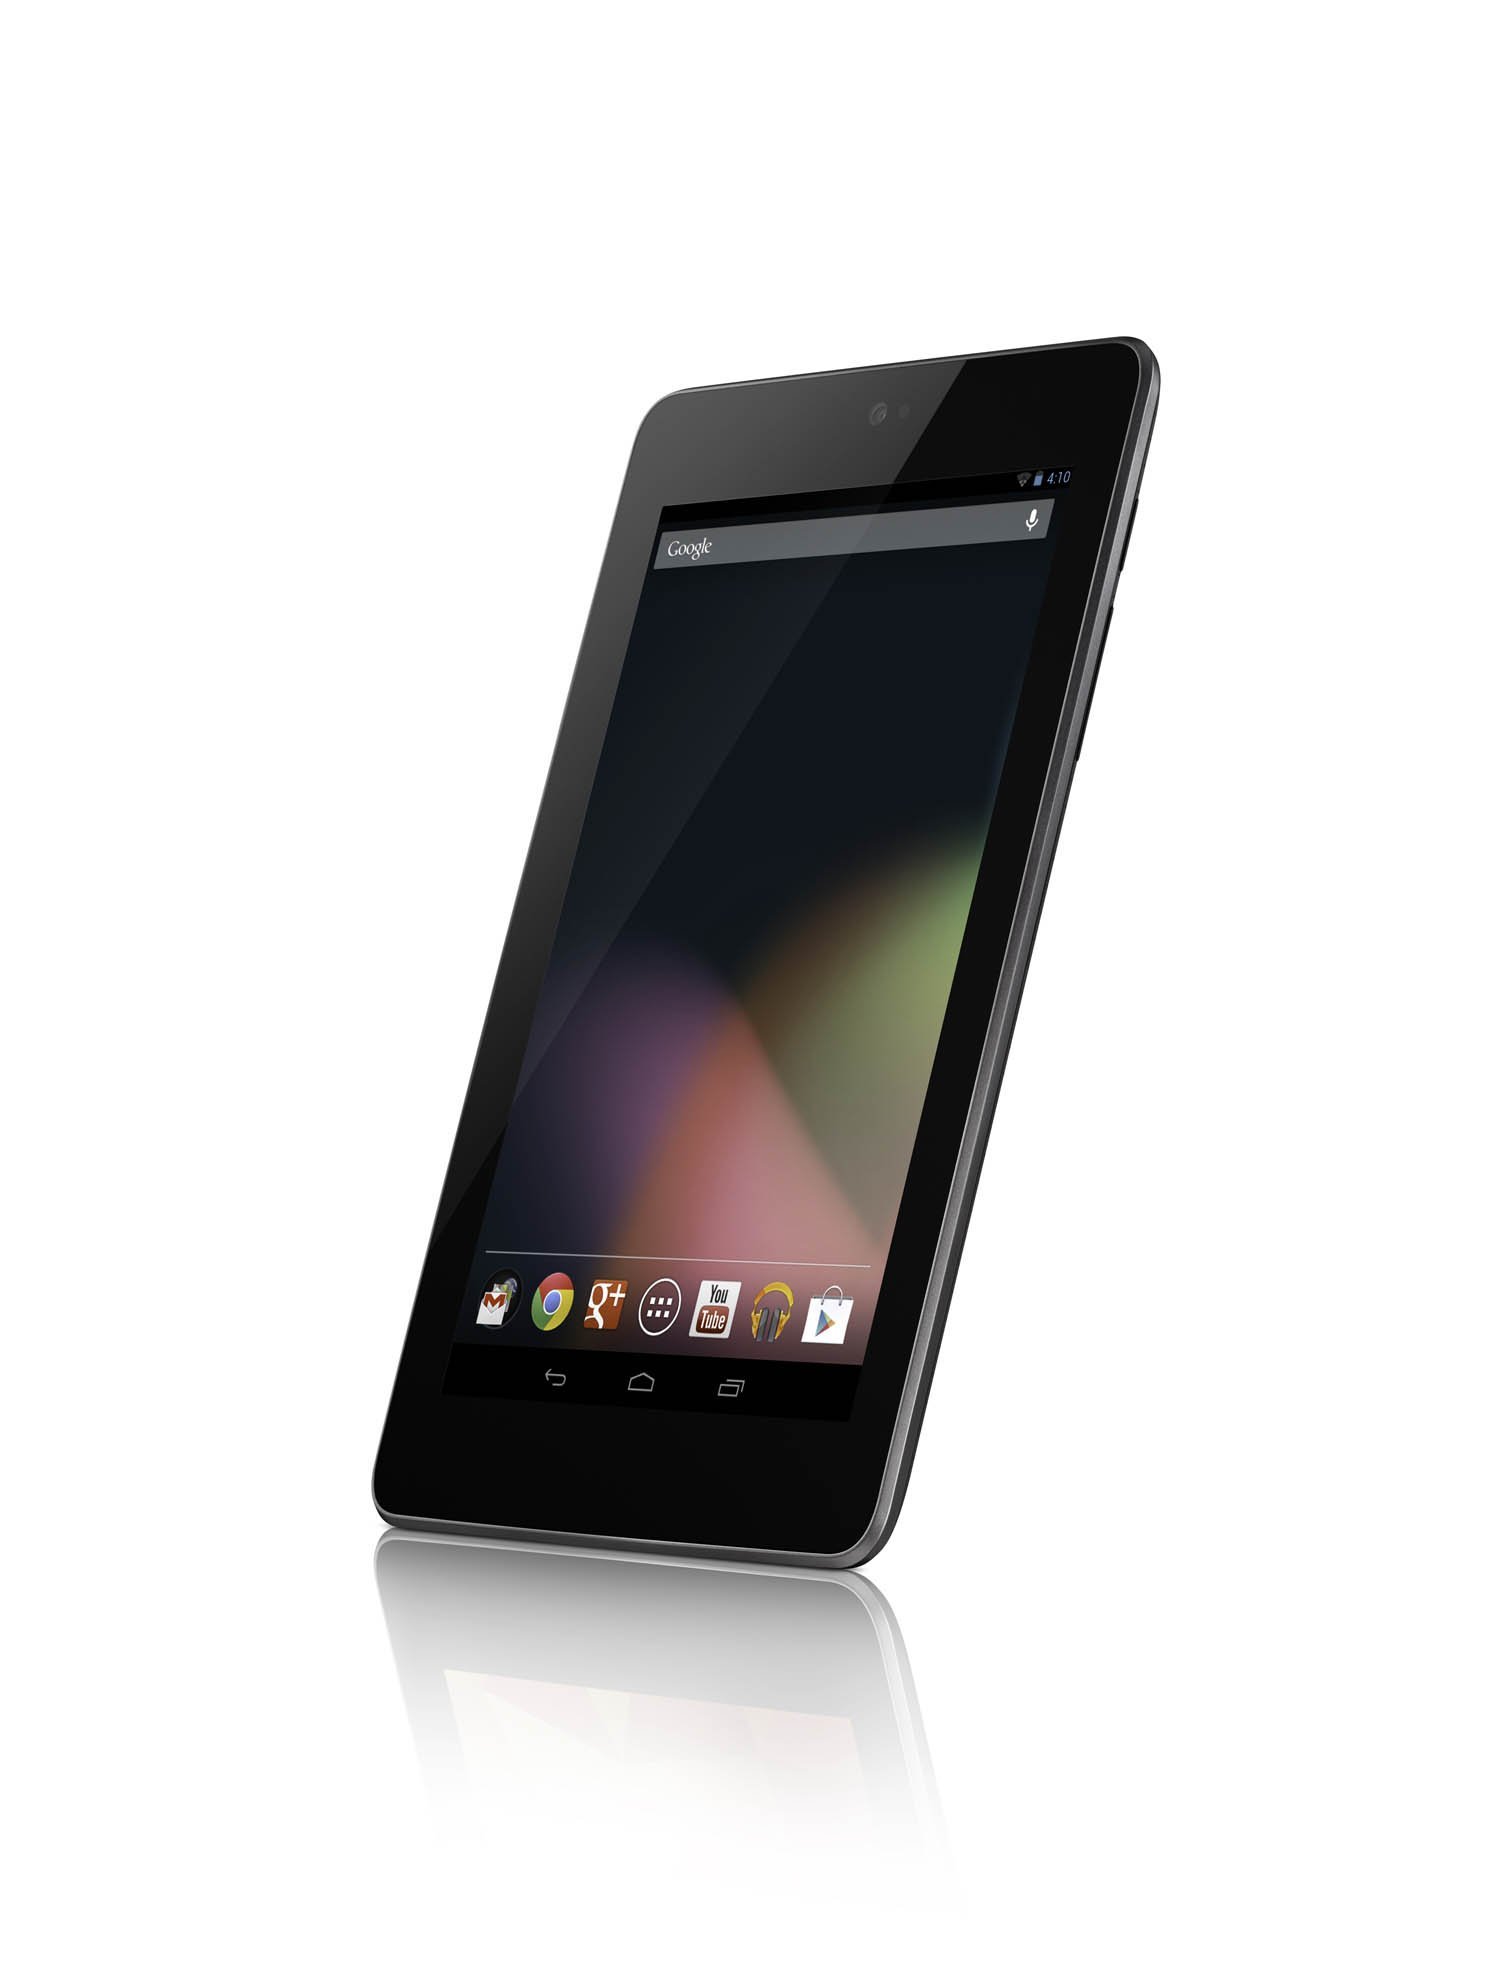 Google ASUS Nexus 7 Tablet